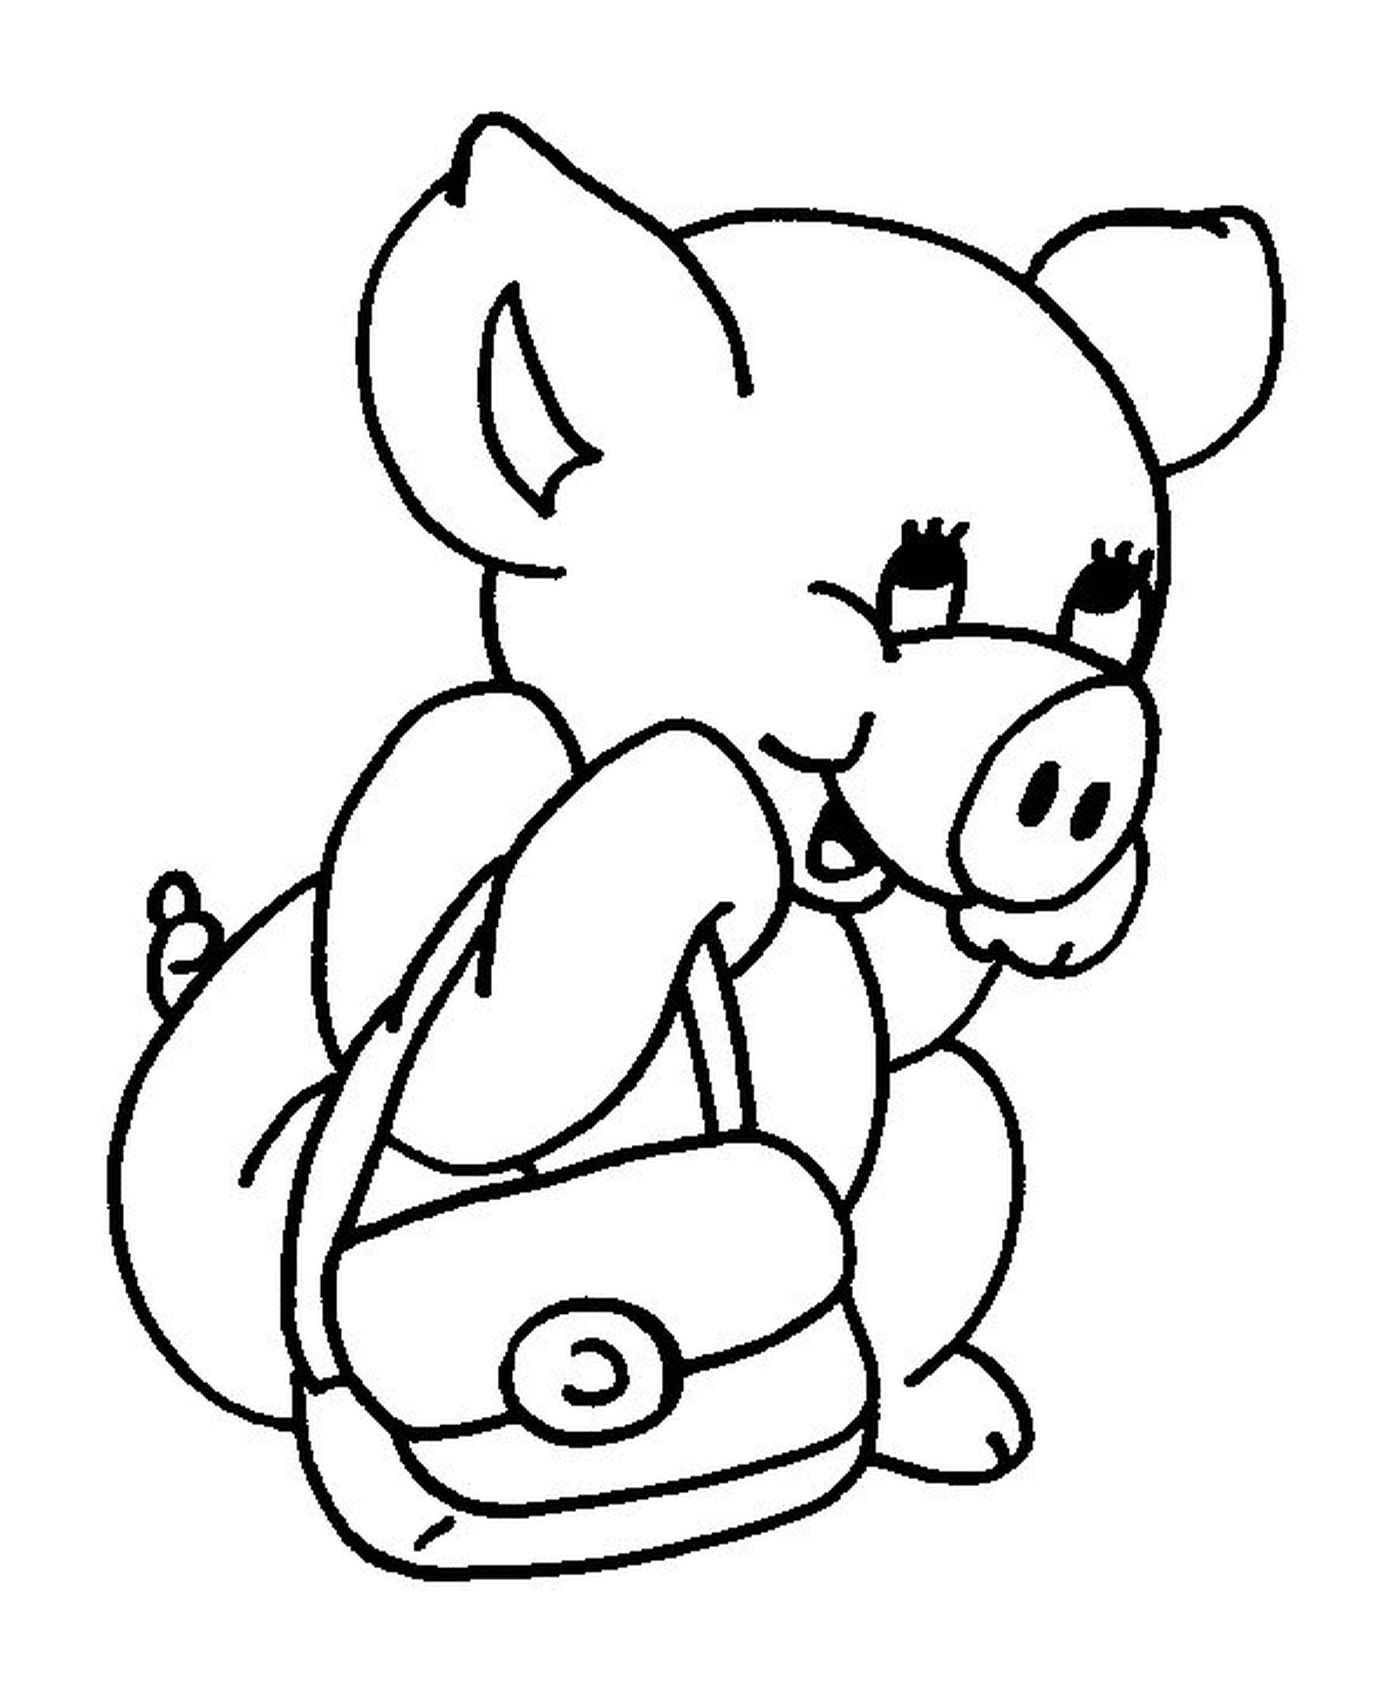  Um porco que vai para a escola com uma bolsa 